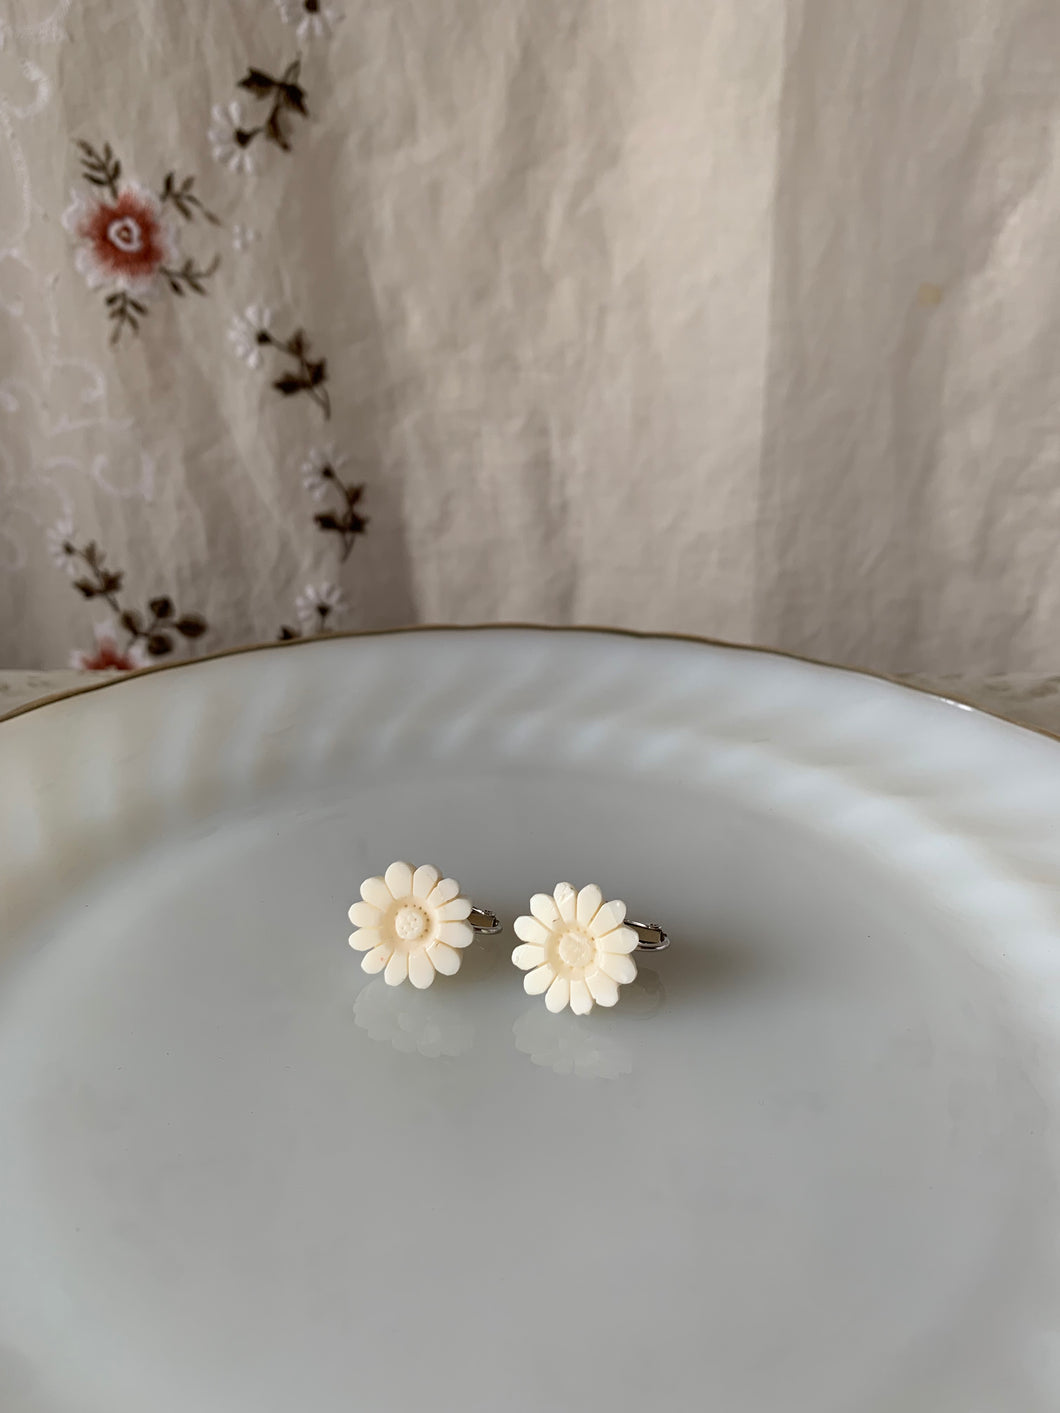 white flower earring